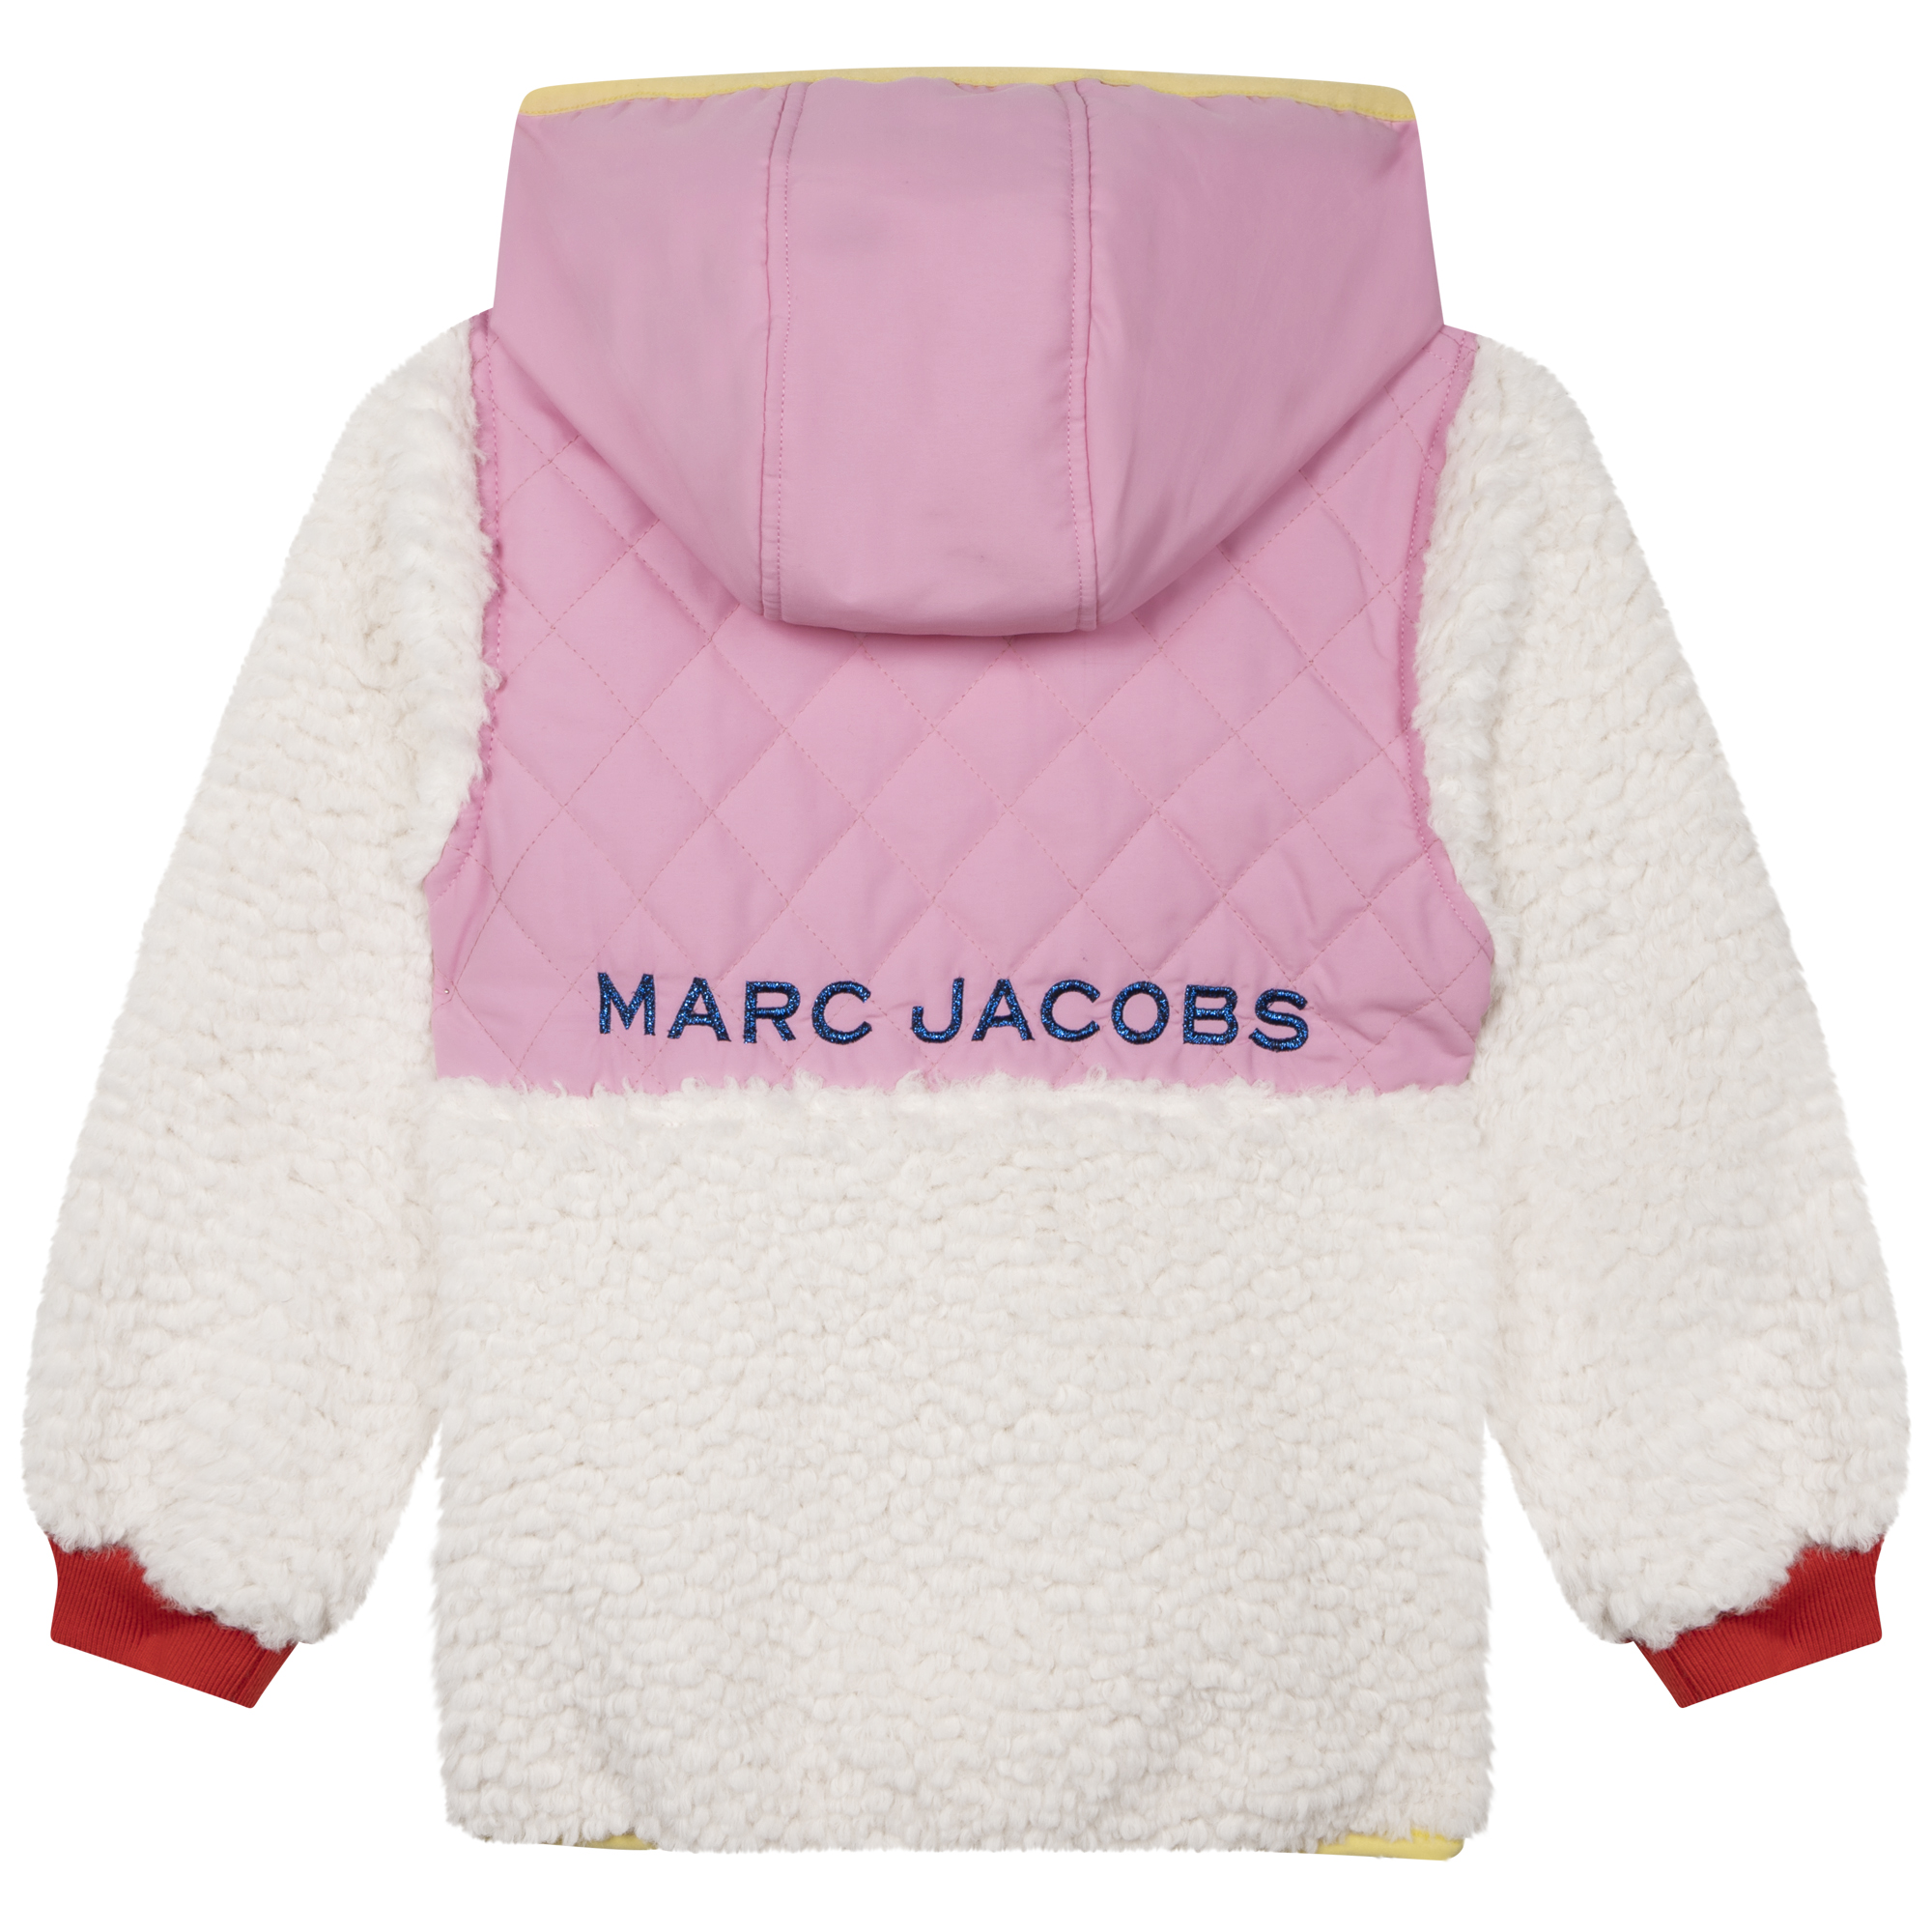 Two-tone hooded sweatshirt MARC JACOBS for GIRL